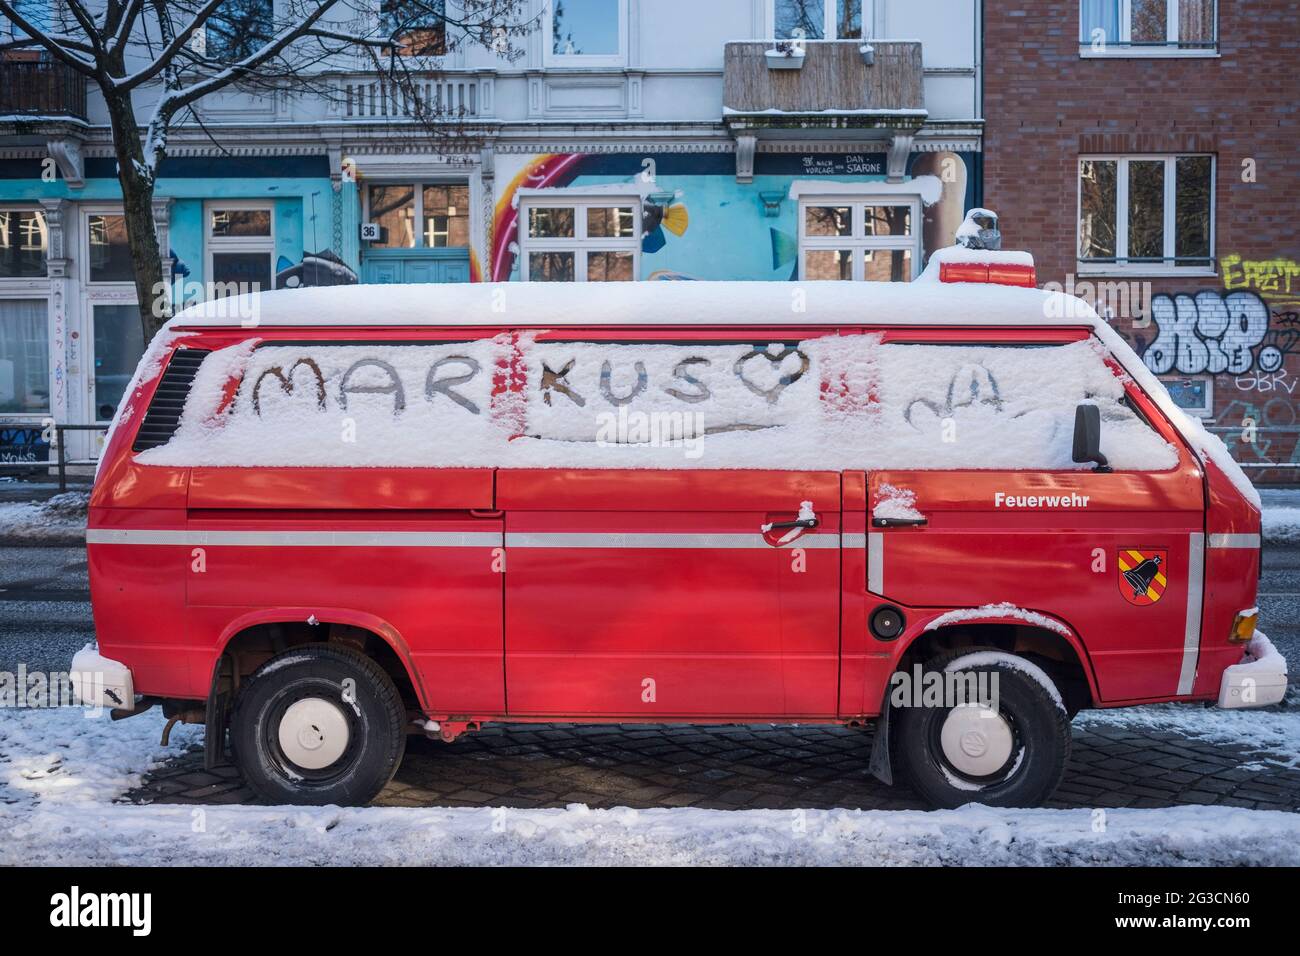 Alter Feuerwehr-Bulli mit Schrifzug 'Markus' im Schnee Banque D'Images